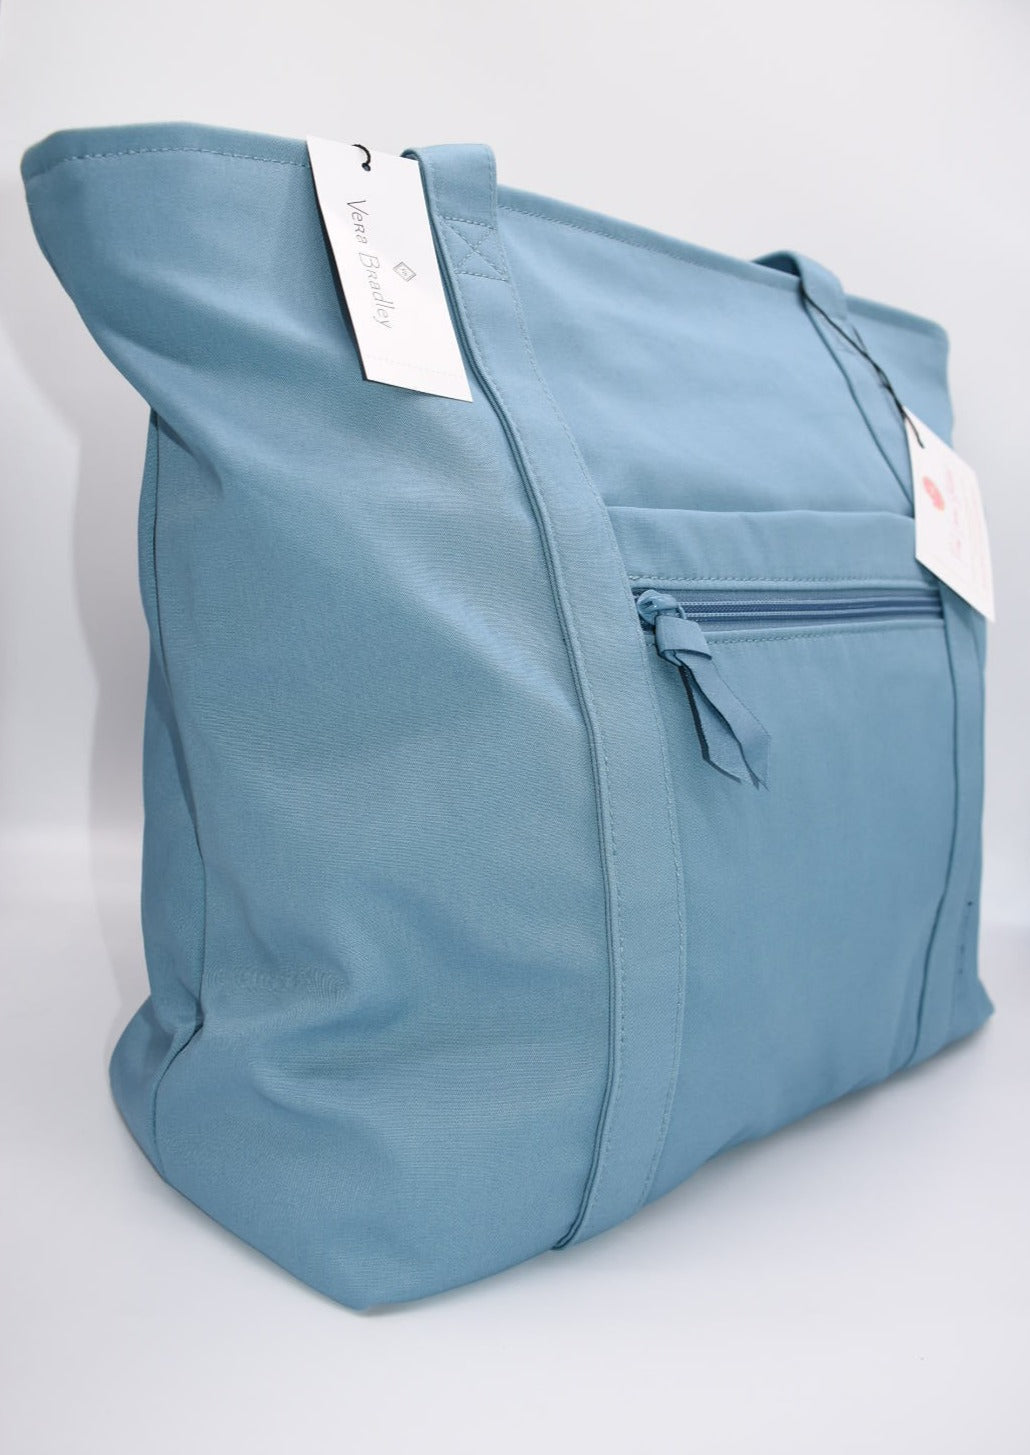 Vera Bradley Large Vera Tote Bag in "Reef Water Blue" Pattern